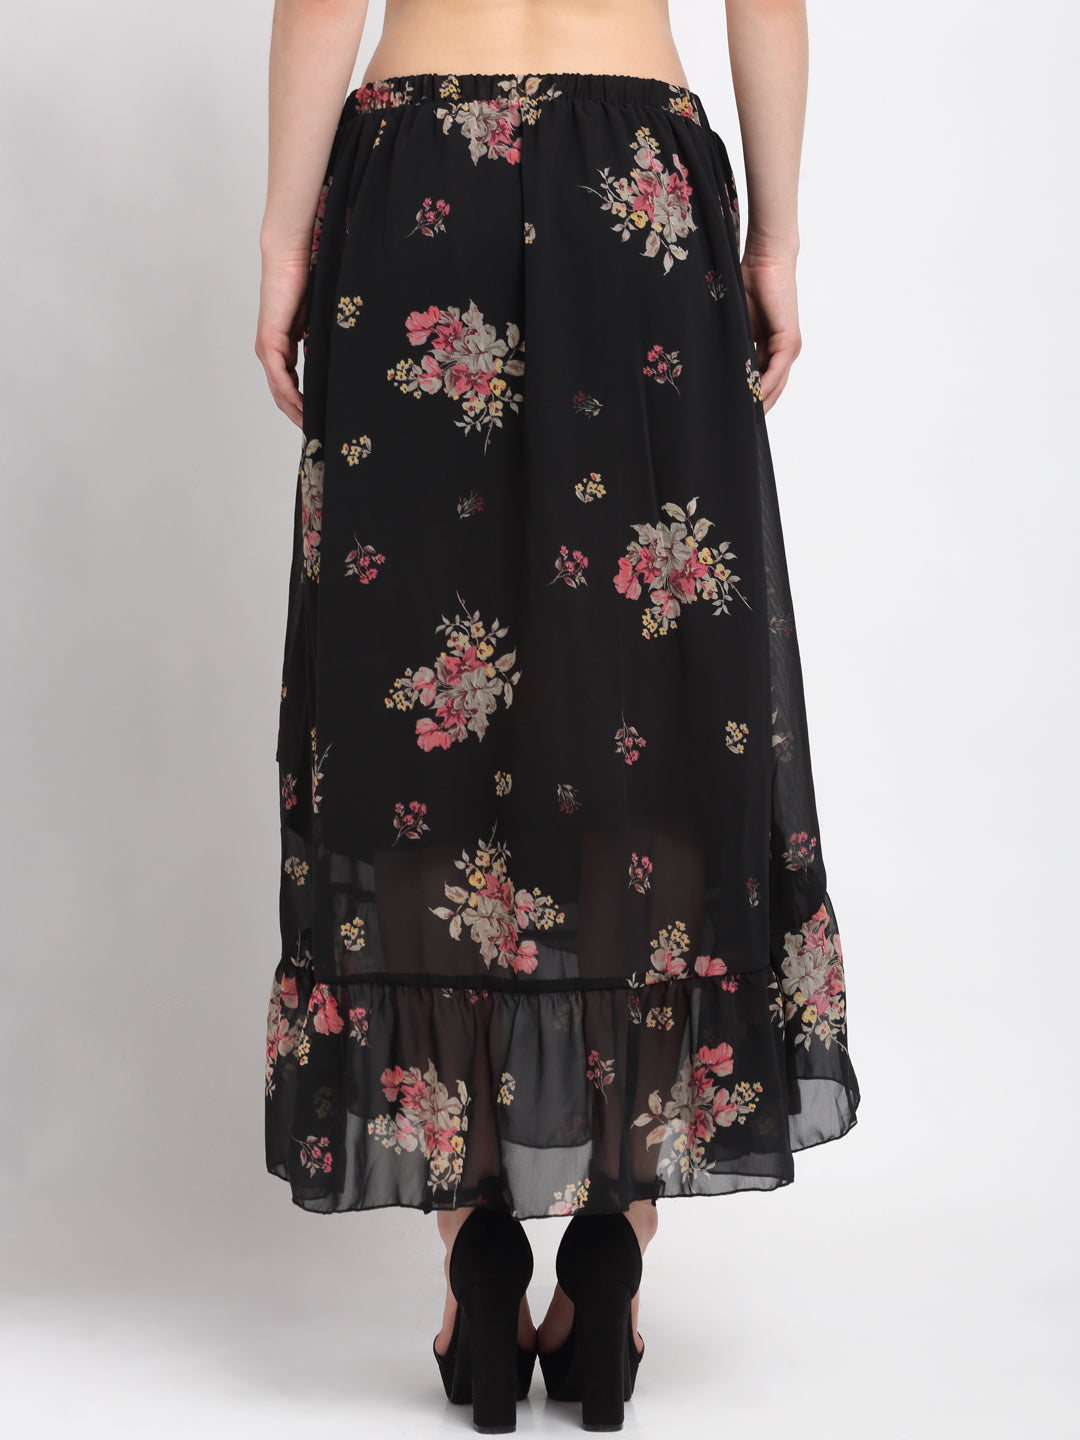 KLOTTHE Black Polyester Floral Skirt